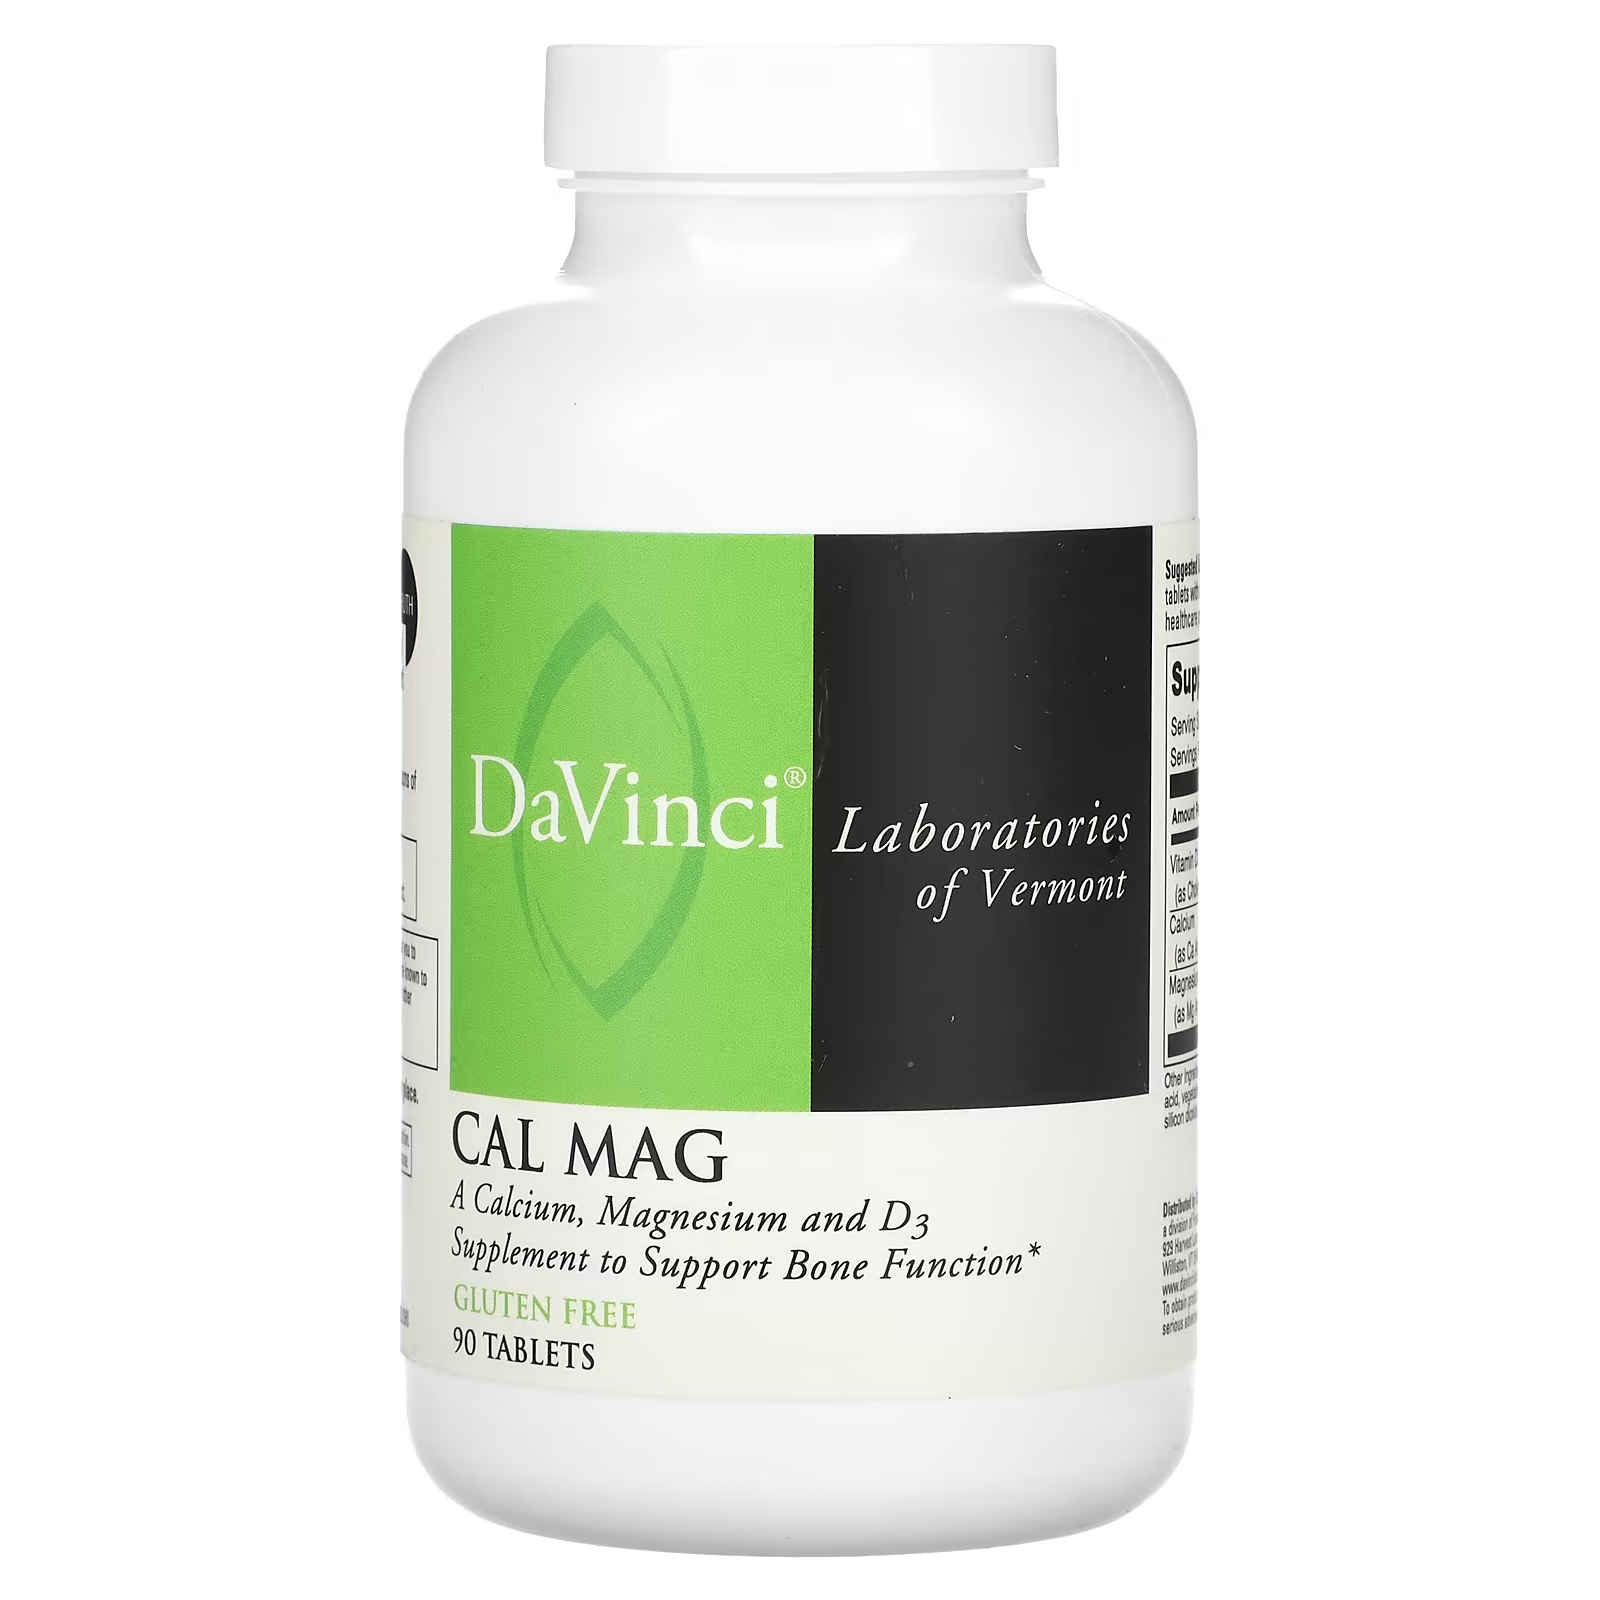 пищевая добавка питьевая с витамином d3 sesderma defense 500 мл Пищевая добавка DaVinci Laboratories of Vermont Cal Mag, 90 таблеток